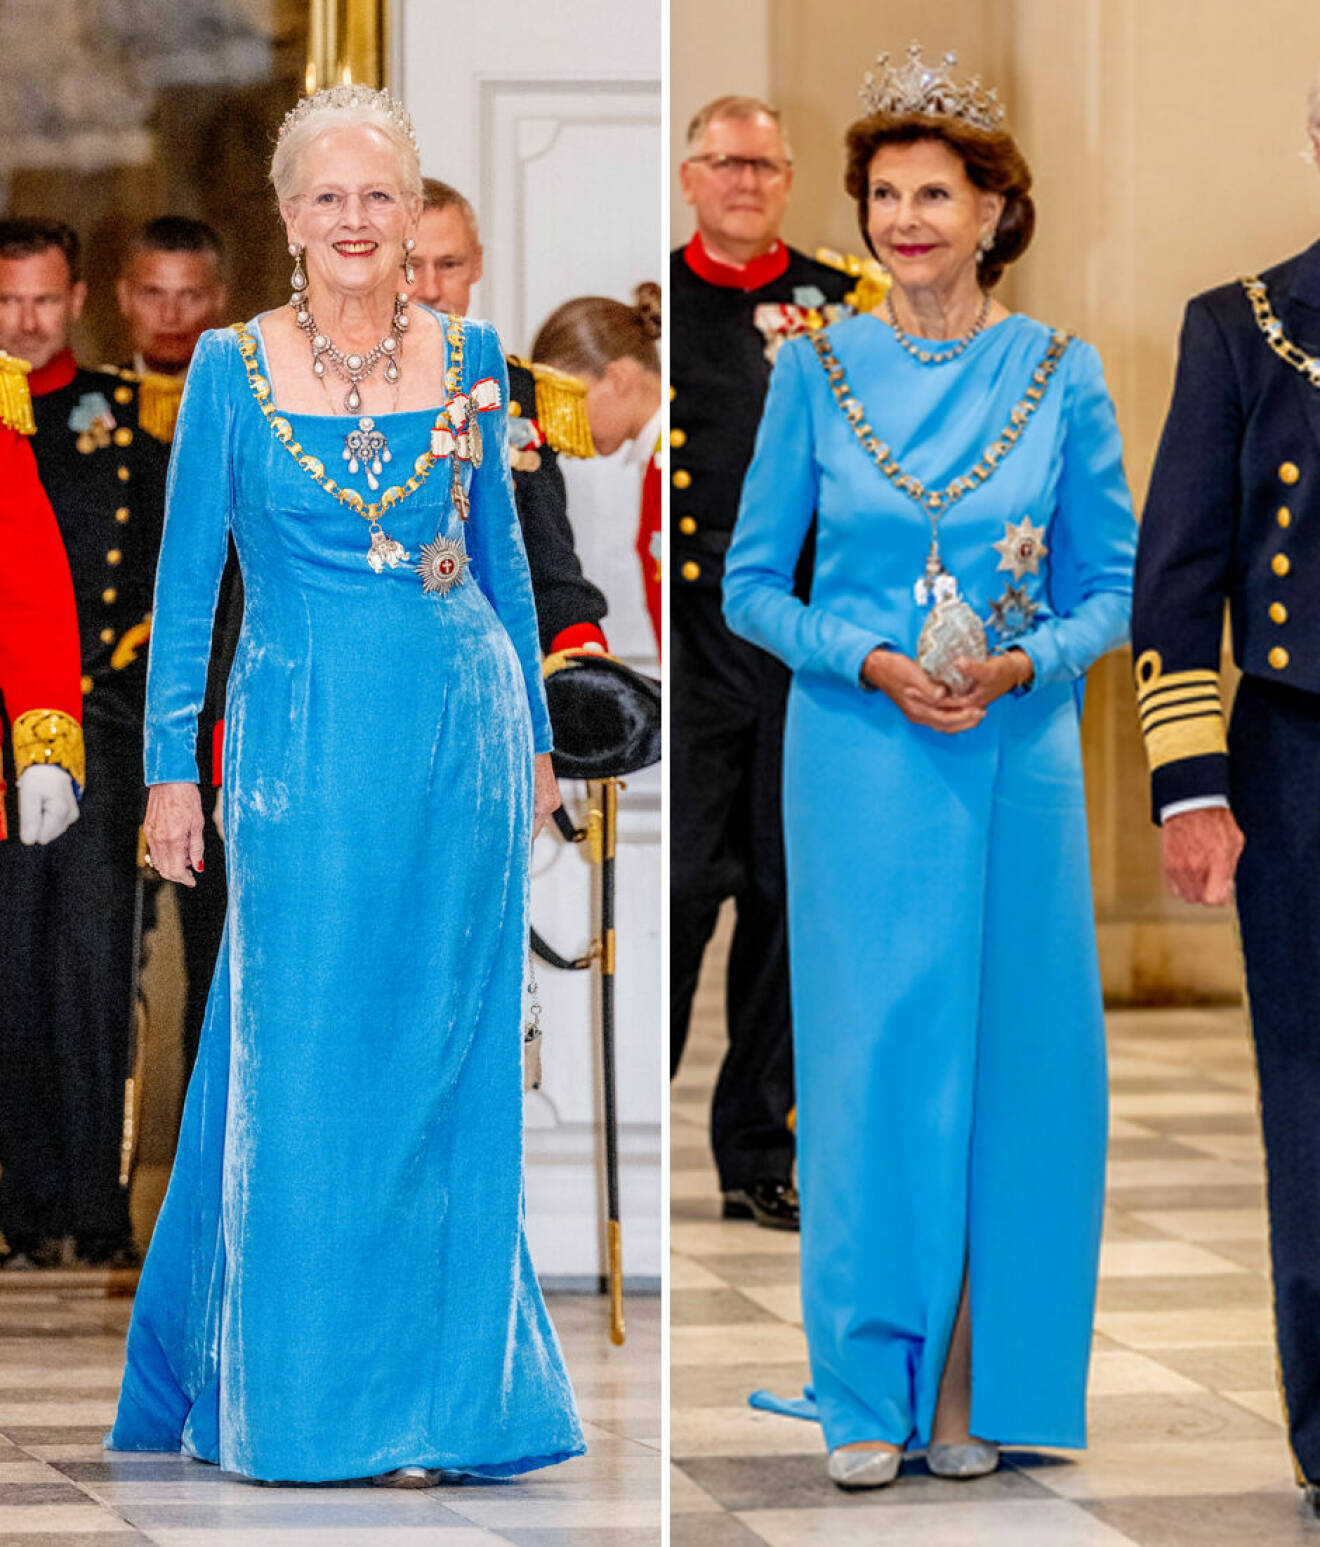 Drottning Silvia och drottning Margrethe på fest i klänningar i samma färg